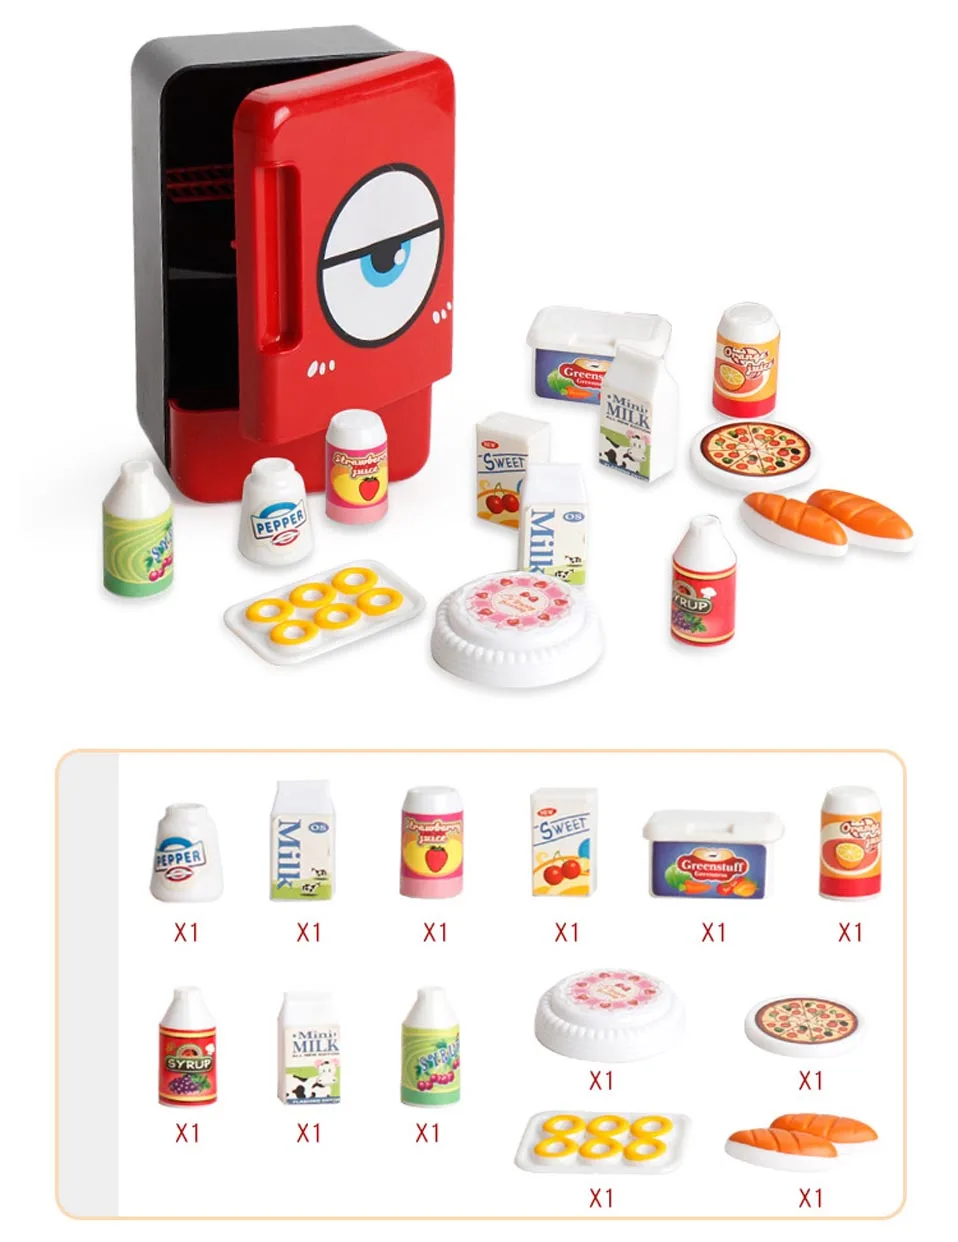 Мини-стиральная машина для макияжа щетка для чистки мини-электронная микроволновая печь пылесос холодильник Семейная Игрушка для ролевых игр